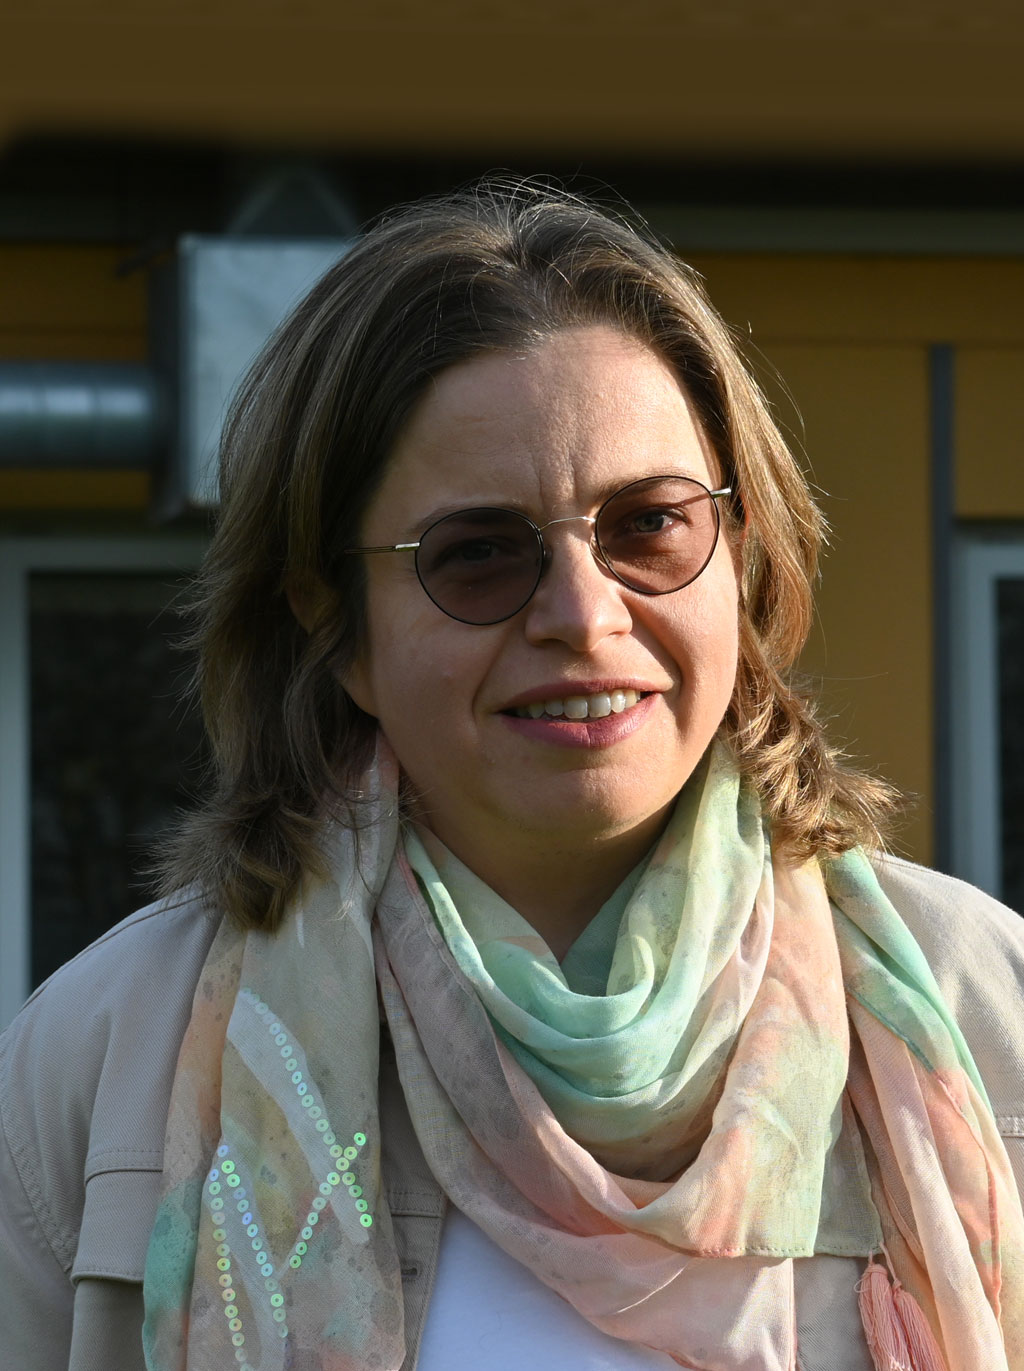 Christine Müller